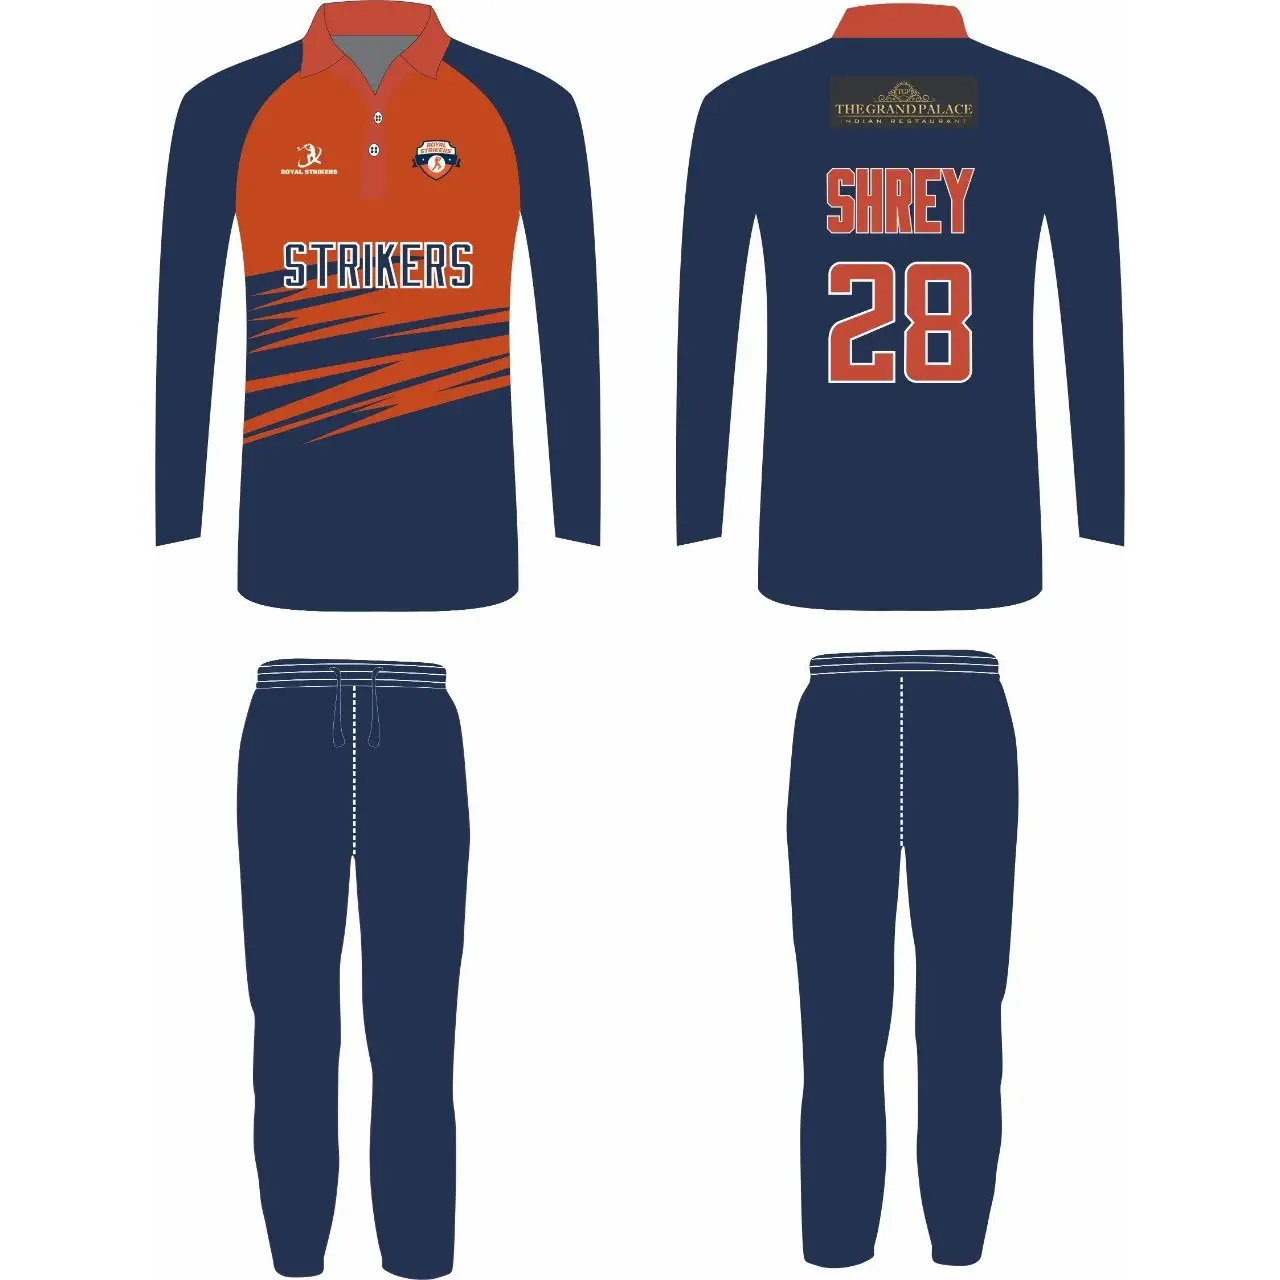 55 Blue Jersey ideas  jersey, sports shirts, sport shirt design